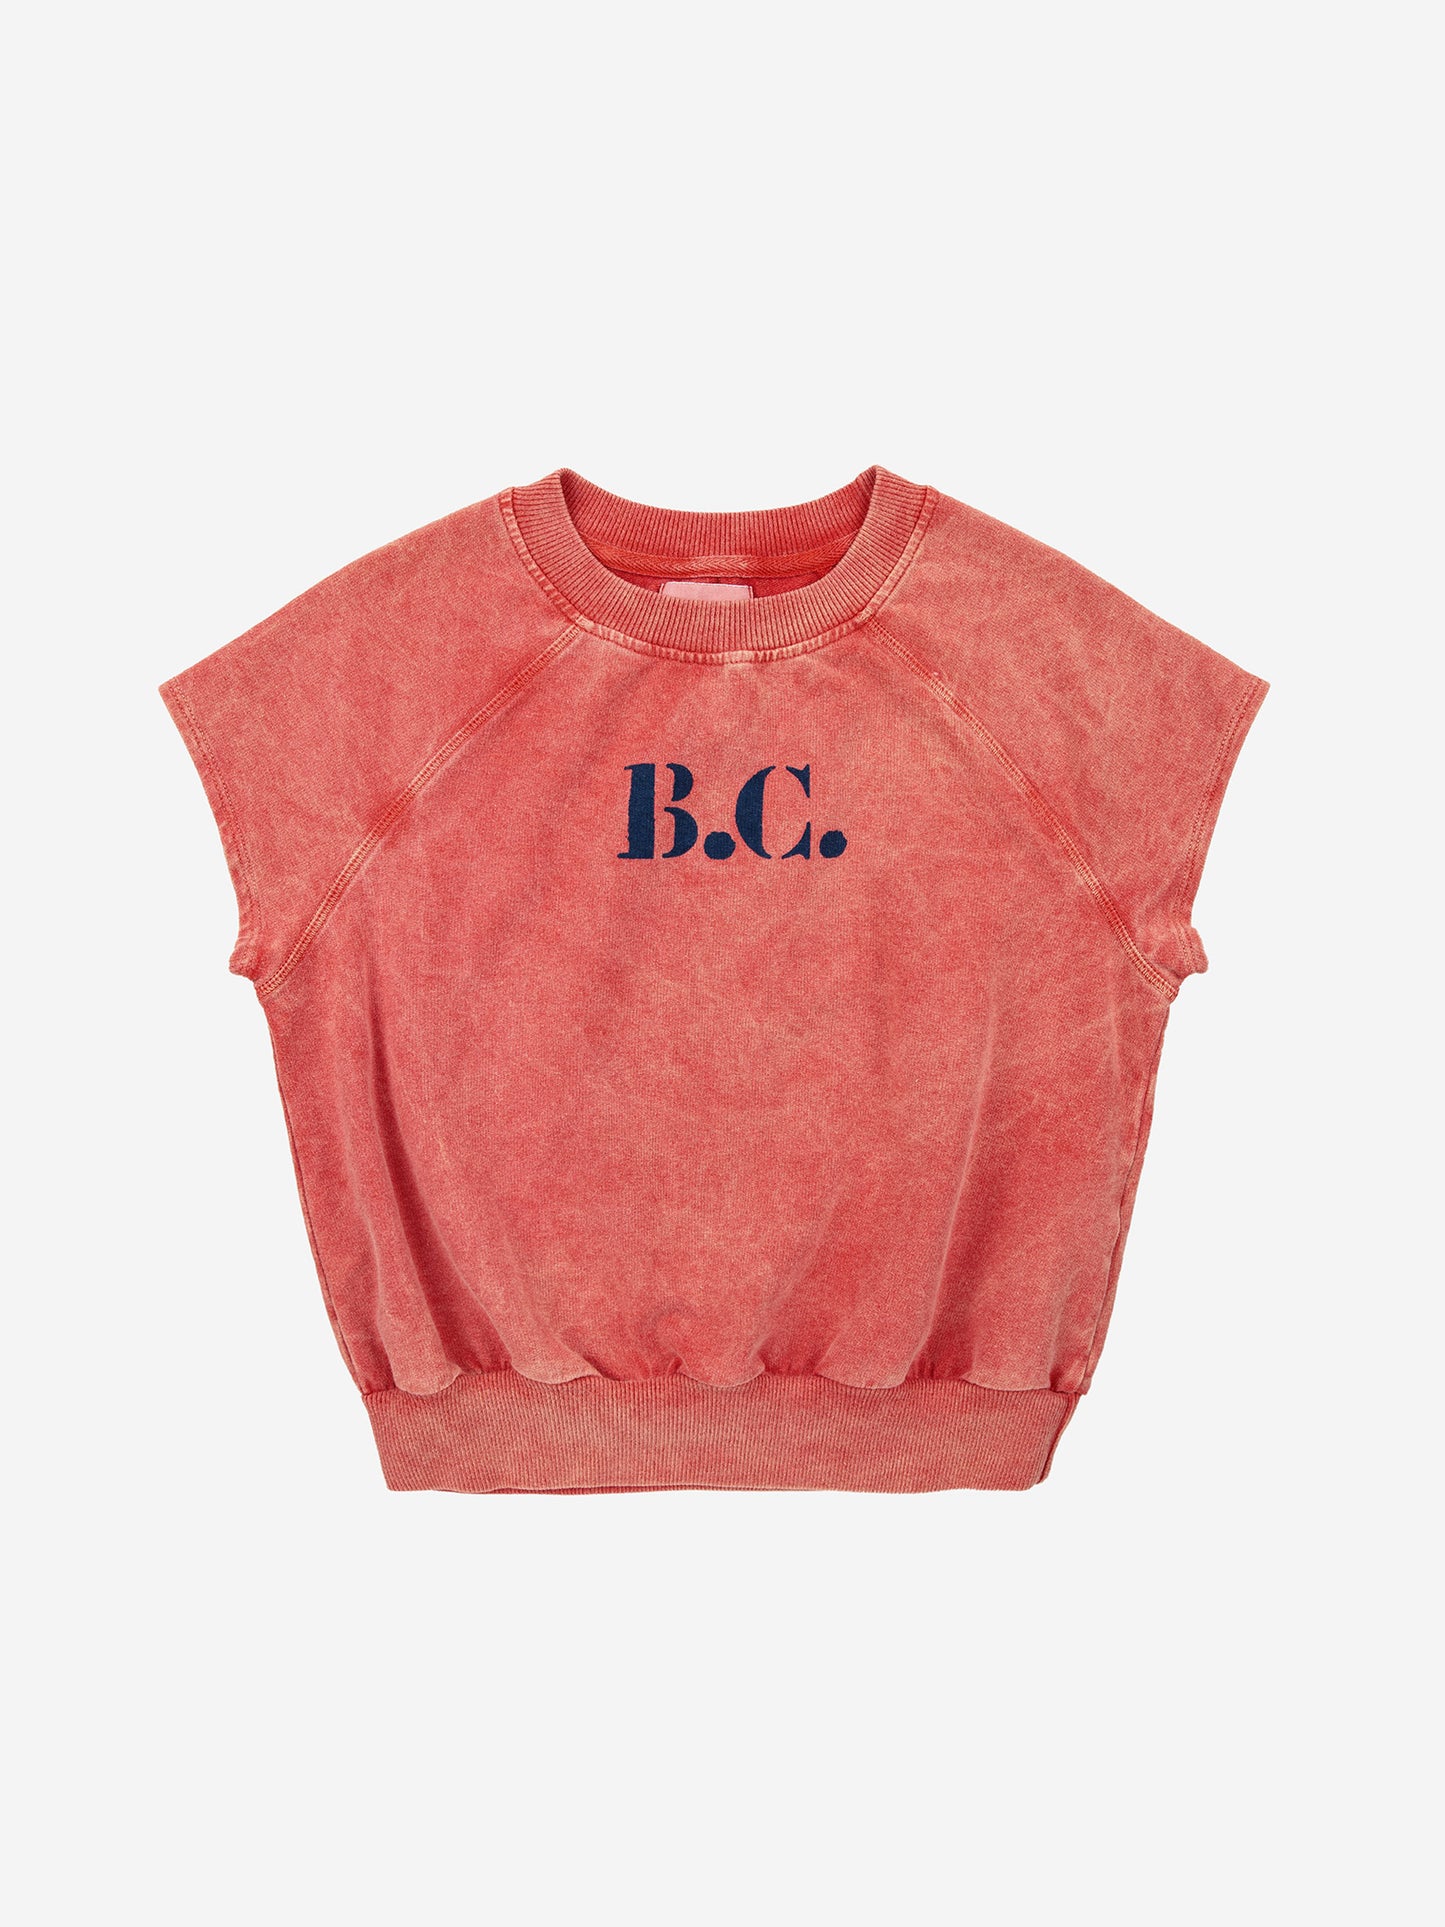 B.C. sleeveless sweatshirt